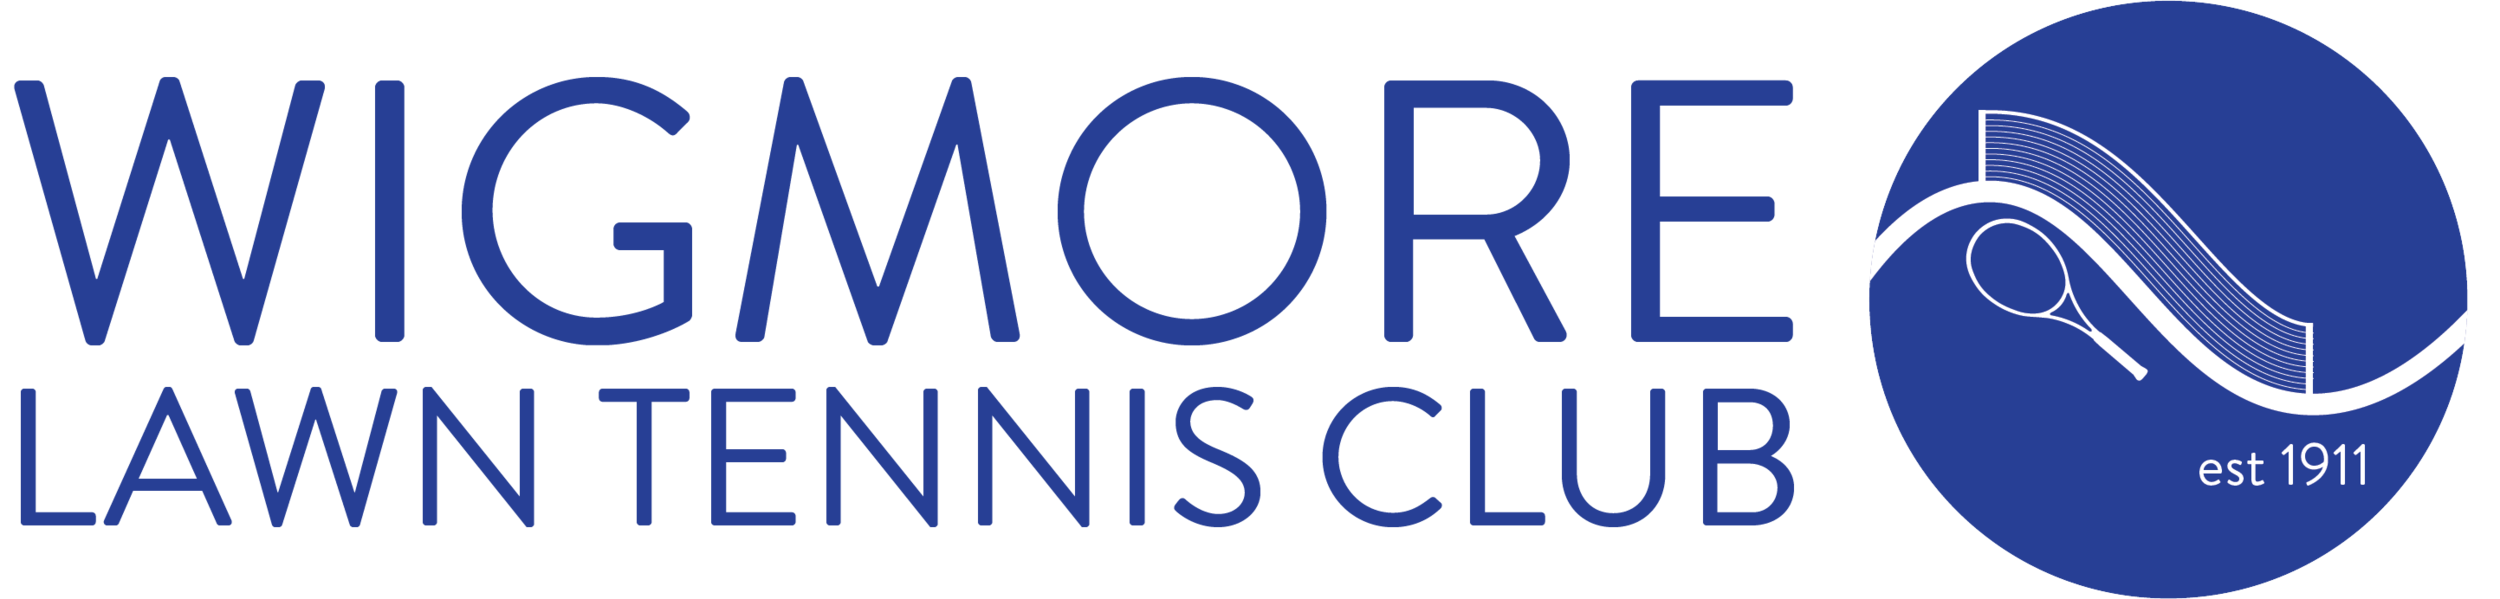 Wigmore Lawn Tennis Club 